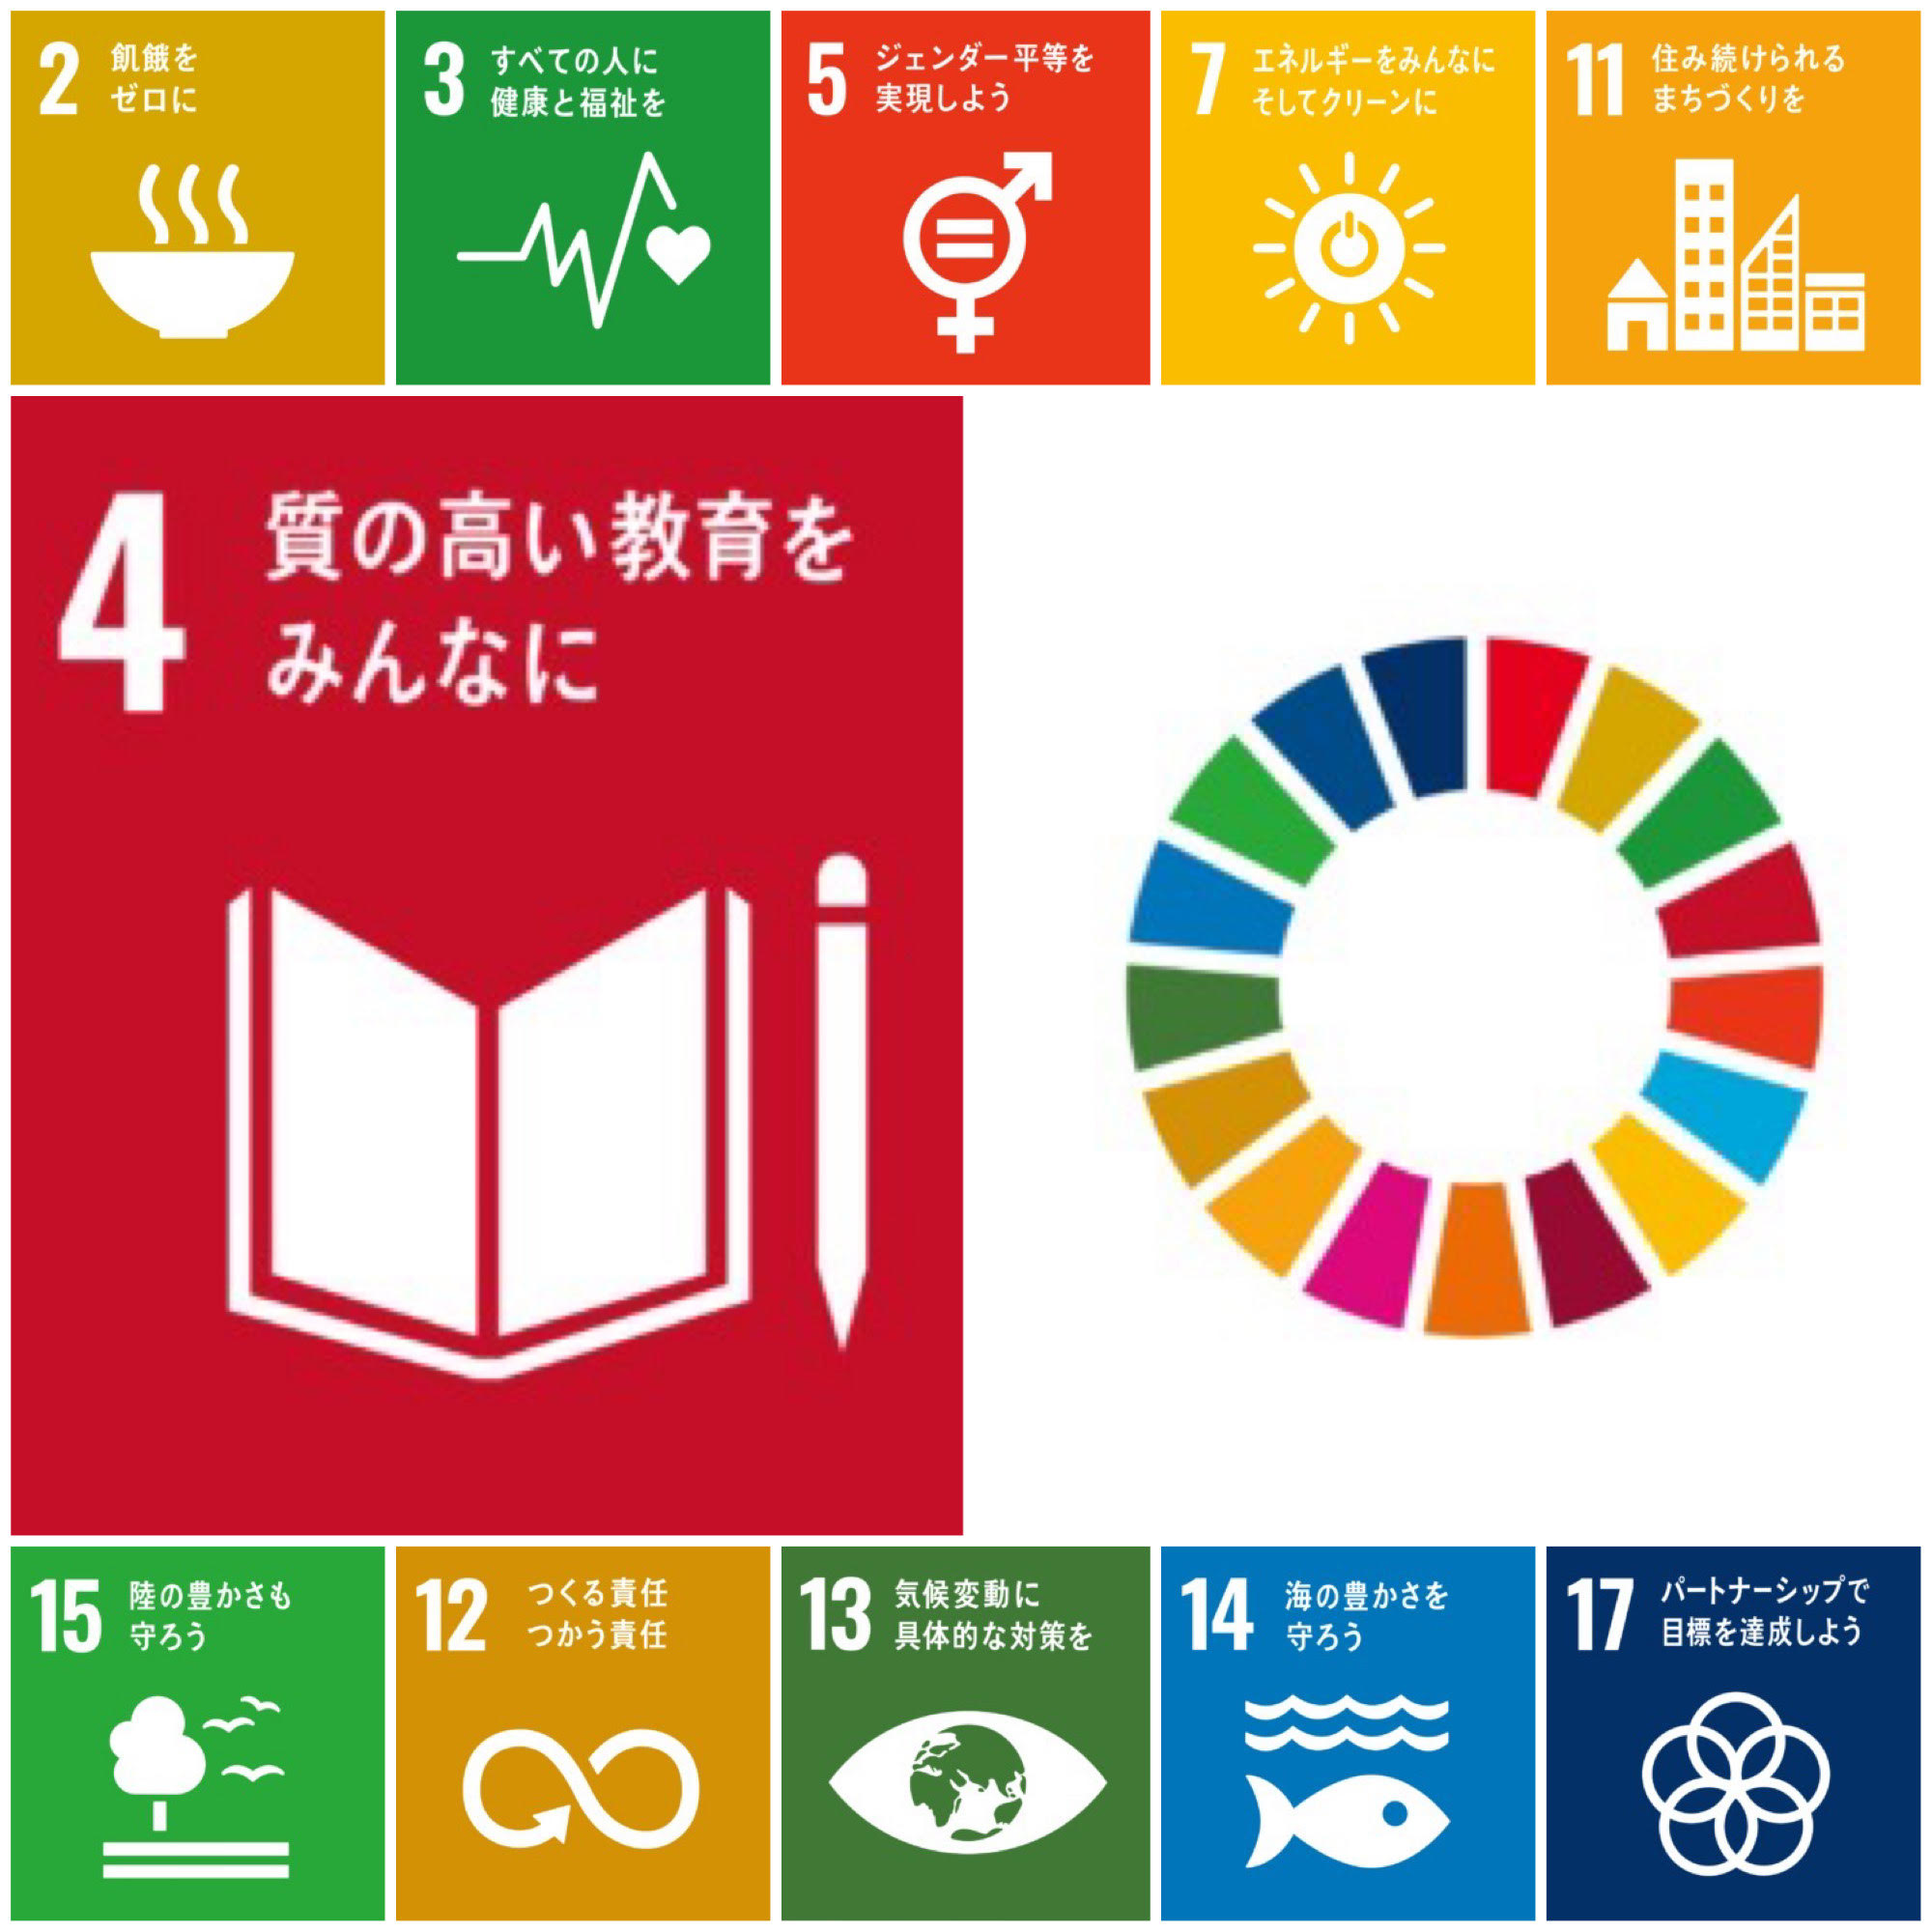 【SDGsへの取り組み③  SDGs掲示板】